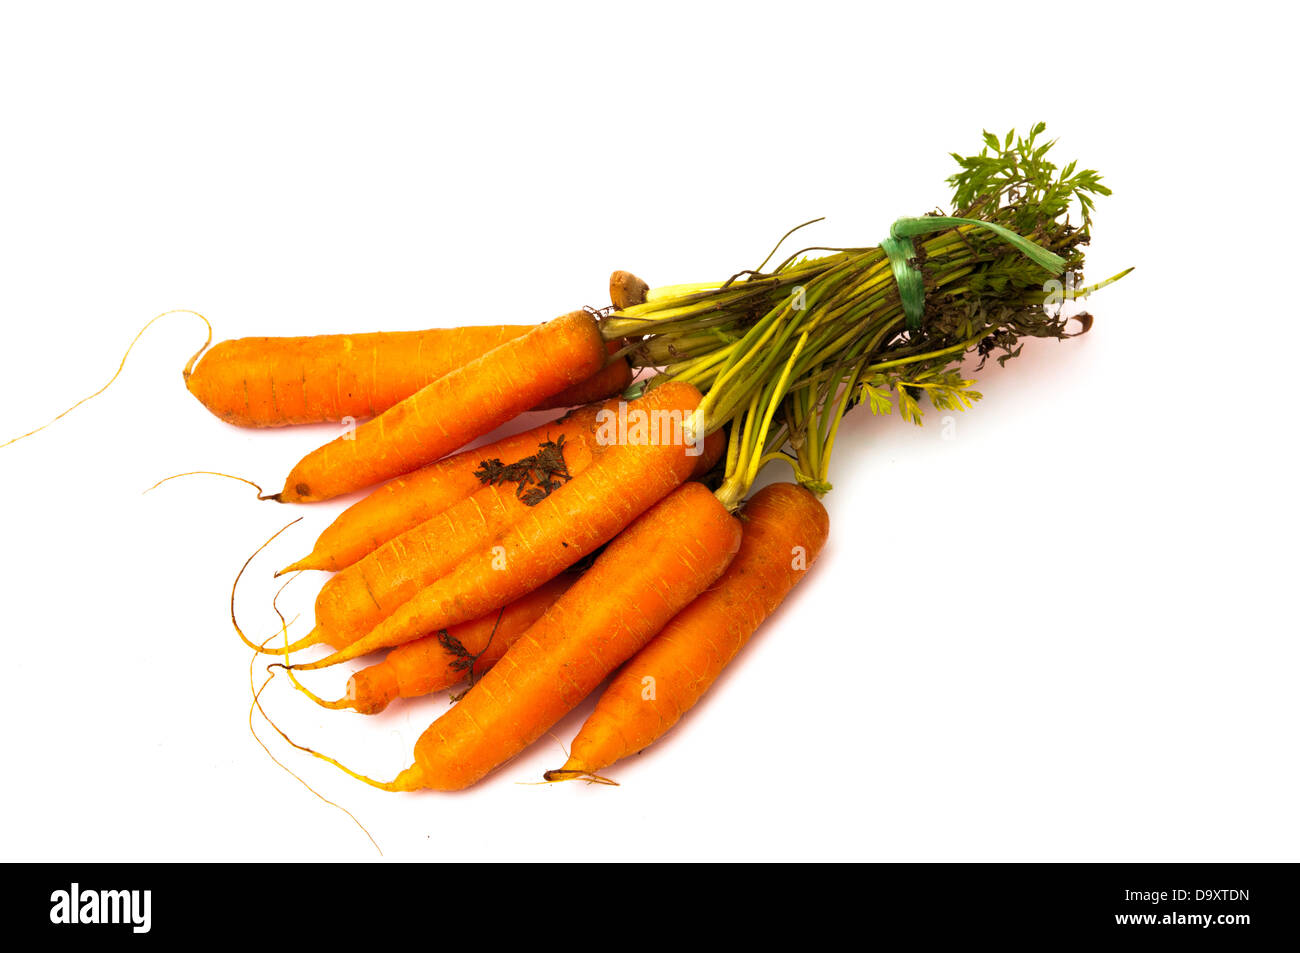 Bouquet di carote immagini e fotografie stock ad alta risoluzione - Alamy